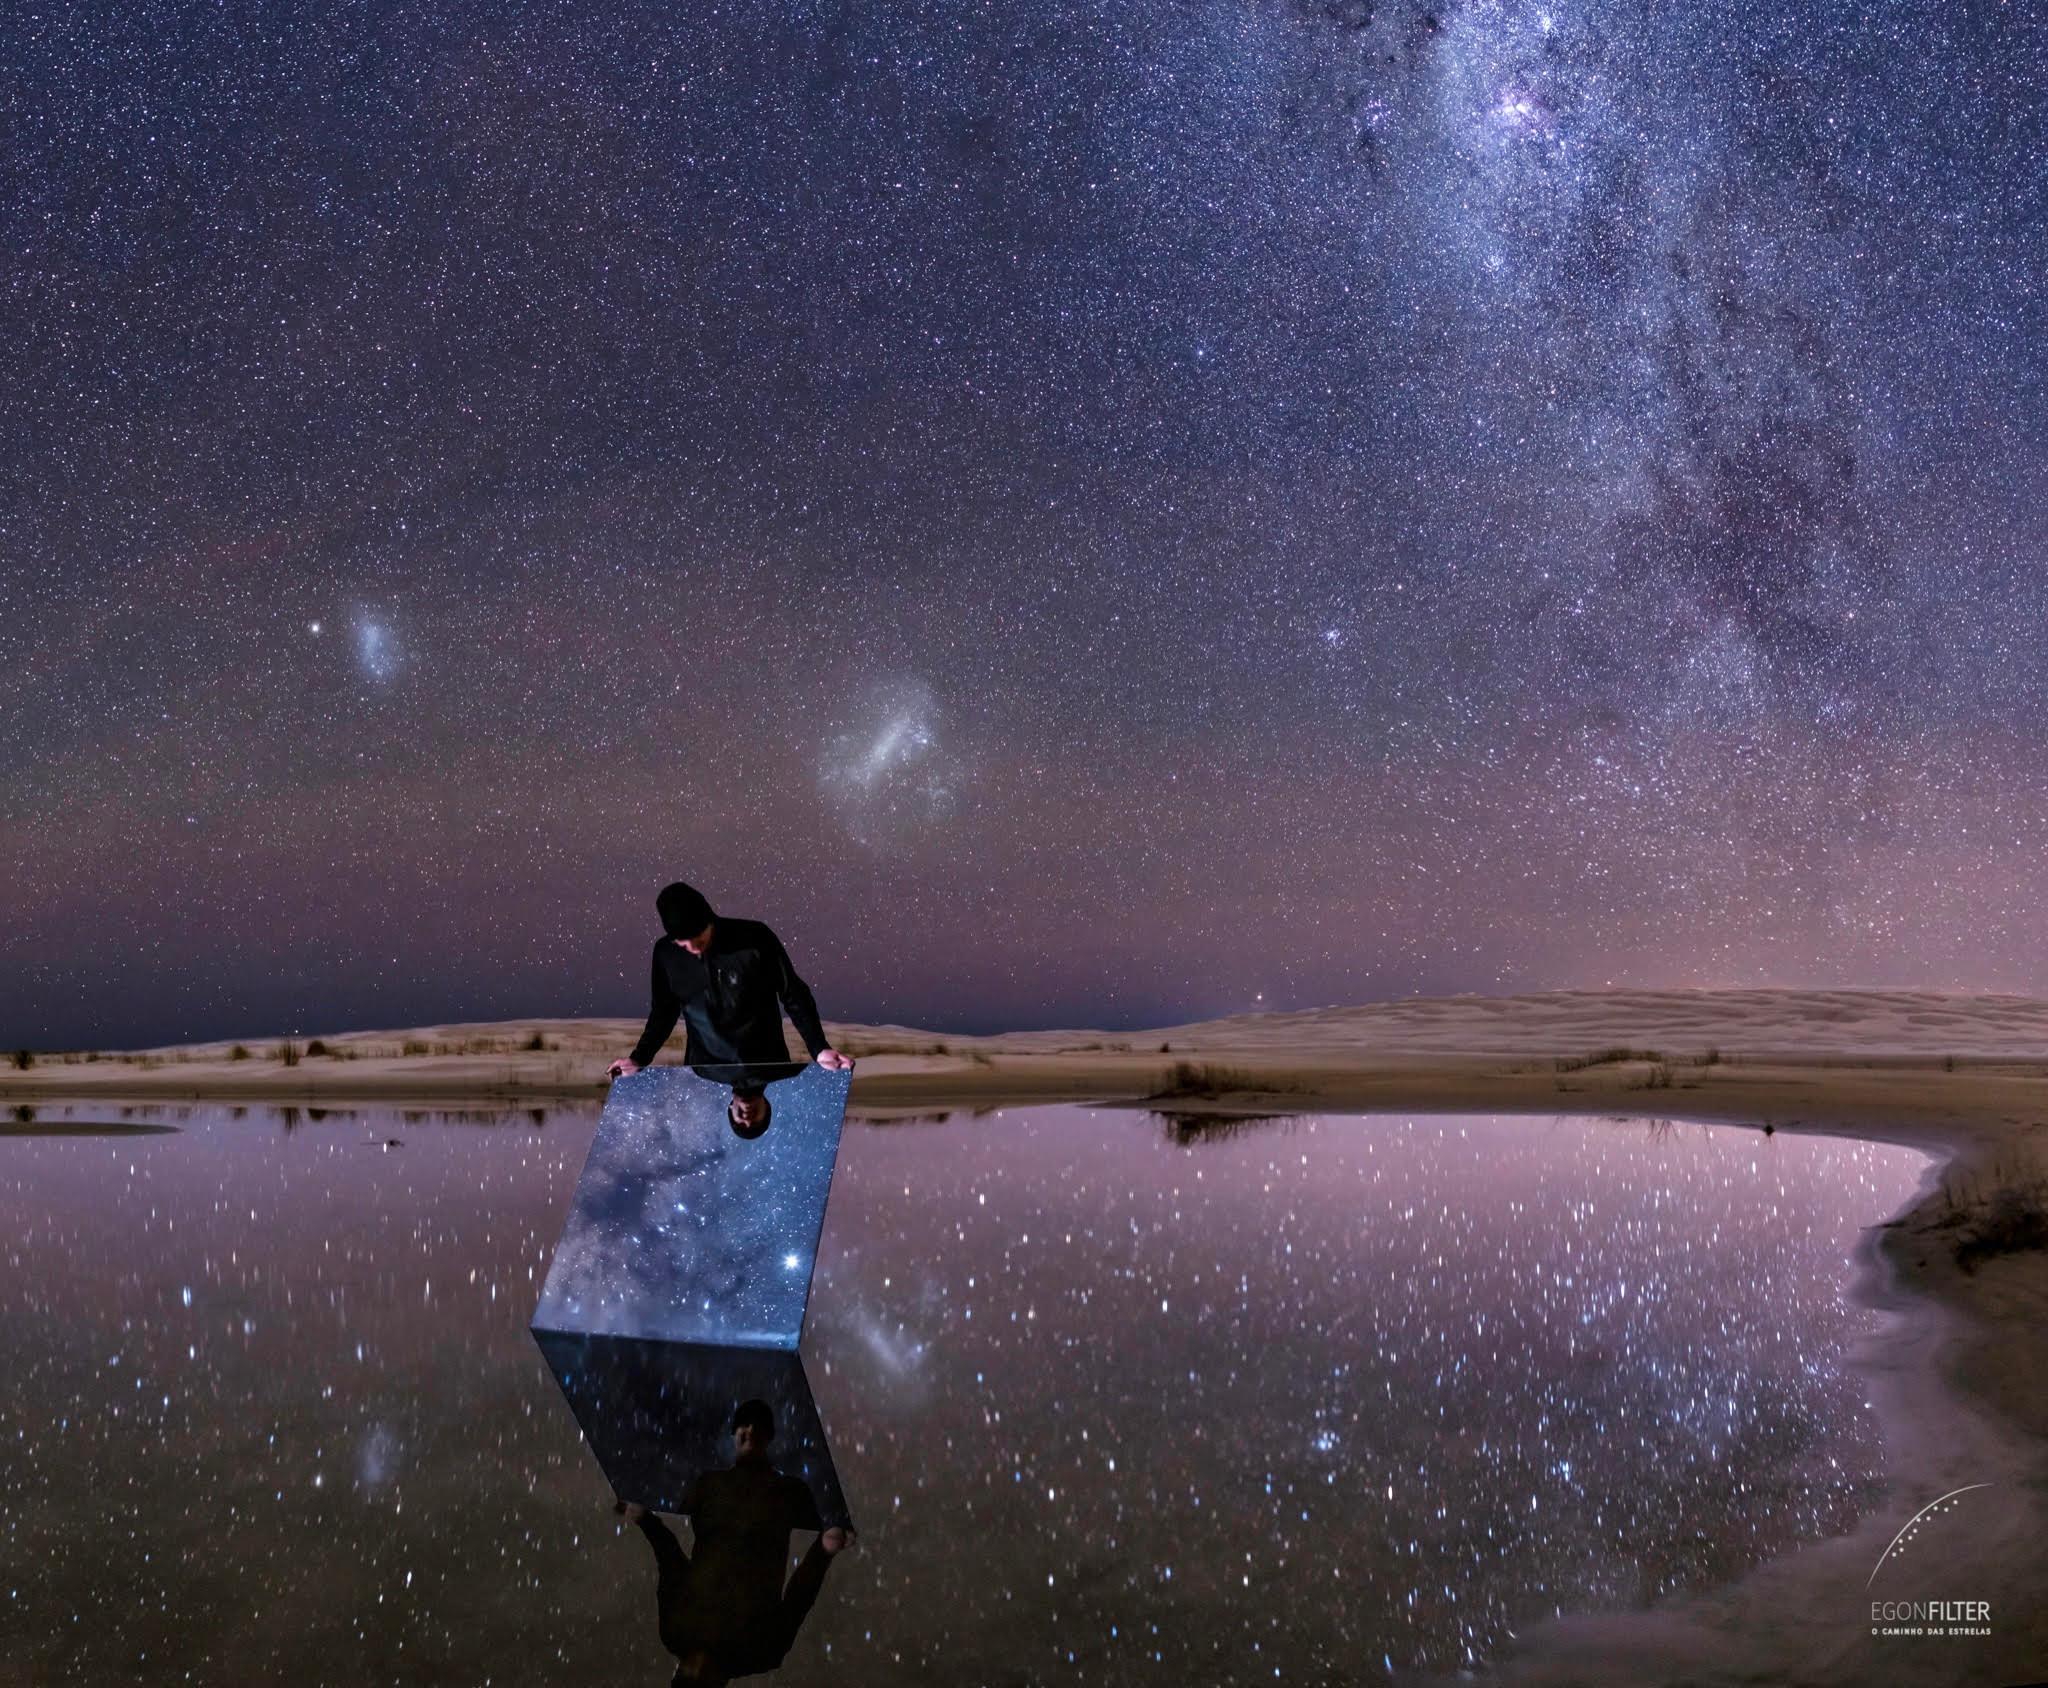 تُظهر الصورة سماءً ليلية صافية من البرازيل والتي تنعكس ليس فقط على الماء الراكدة، بل أيضاً على مرآة يحملها شخص ما. 